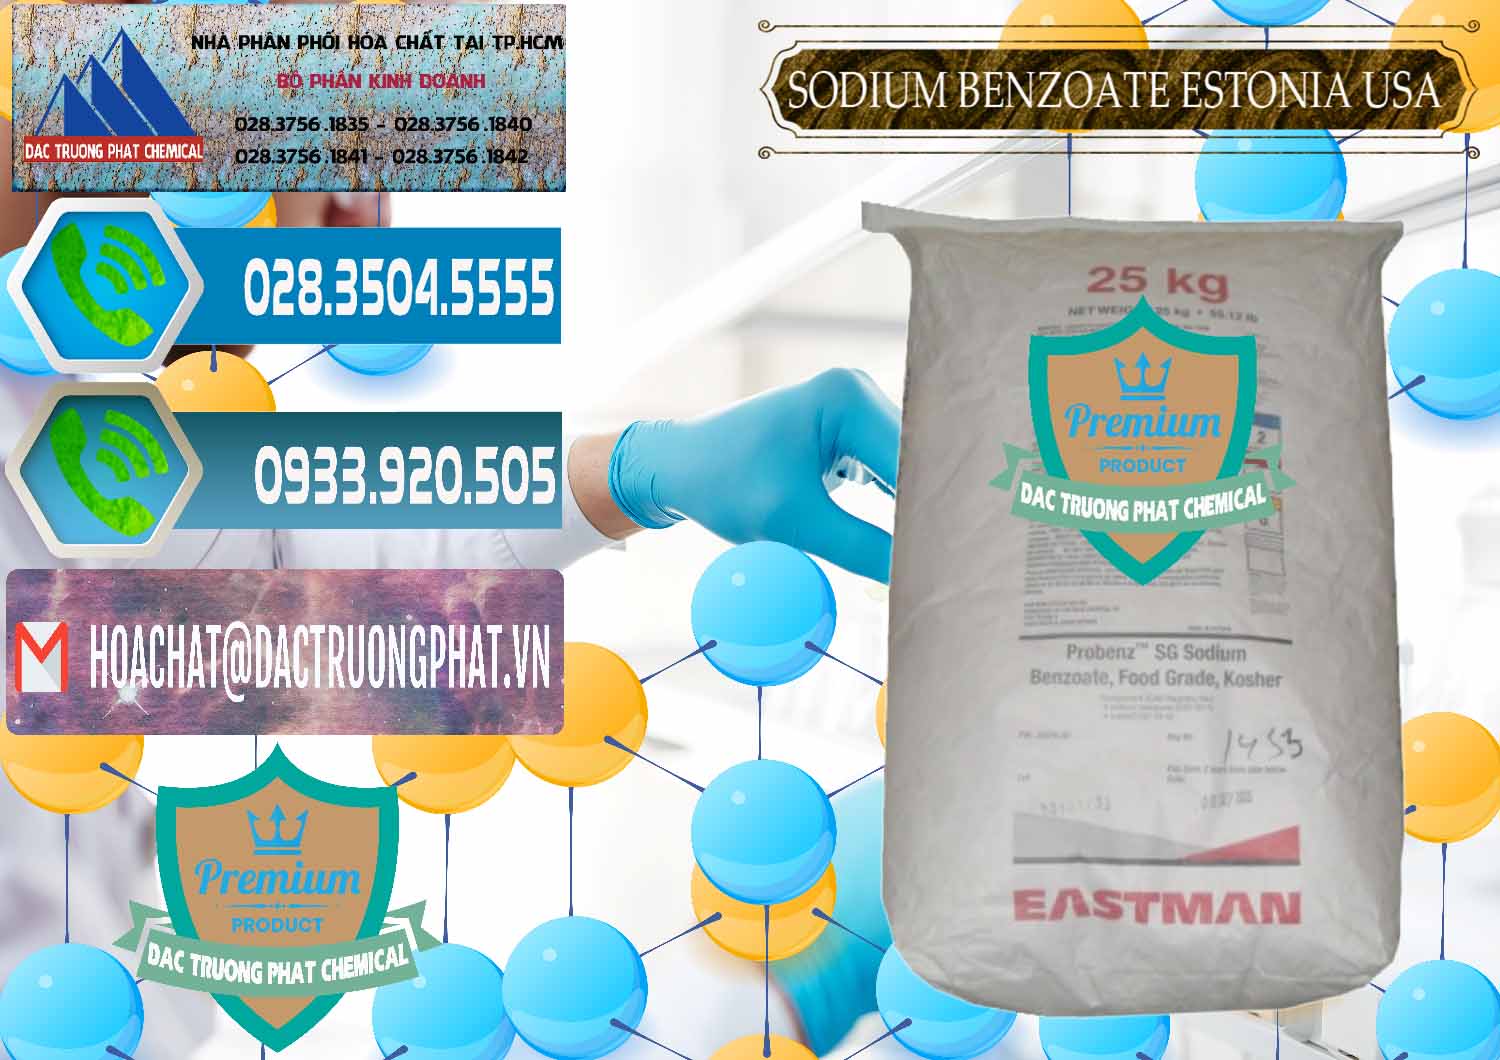 Cty cung ứng & bán Sodium Benzoate - Mốc Bột Estonia Mỹ USA - 0468 - Phân phối và kinh doanh hóa chất tại TP.HCM - congtyhoachat.net